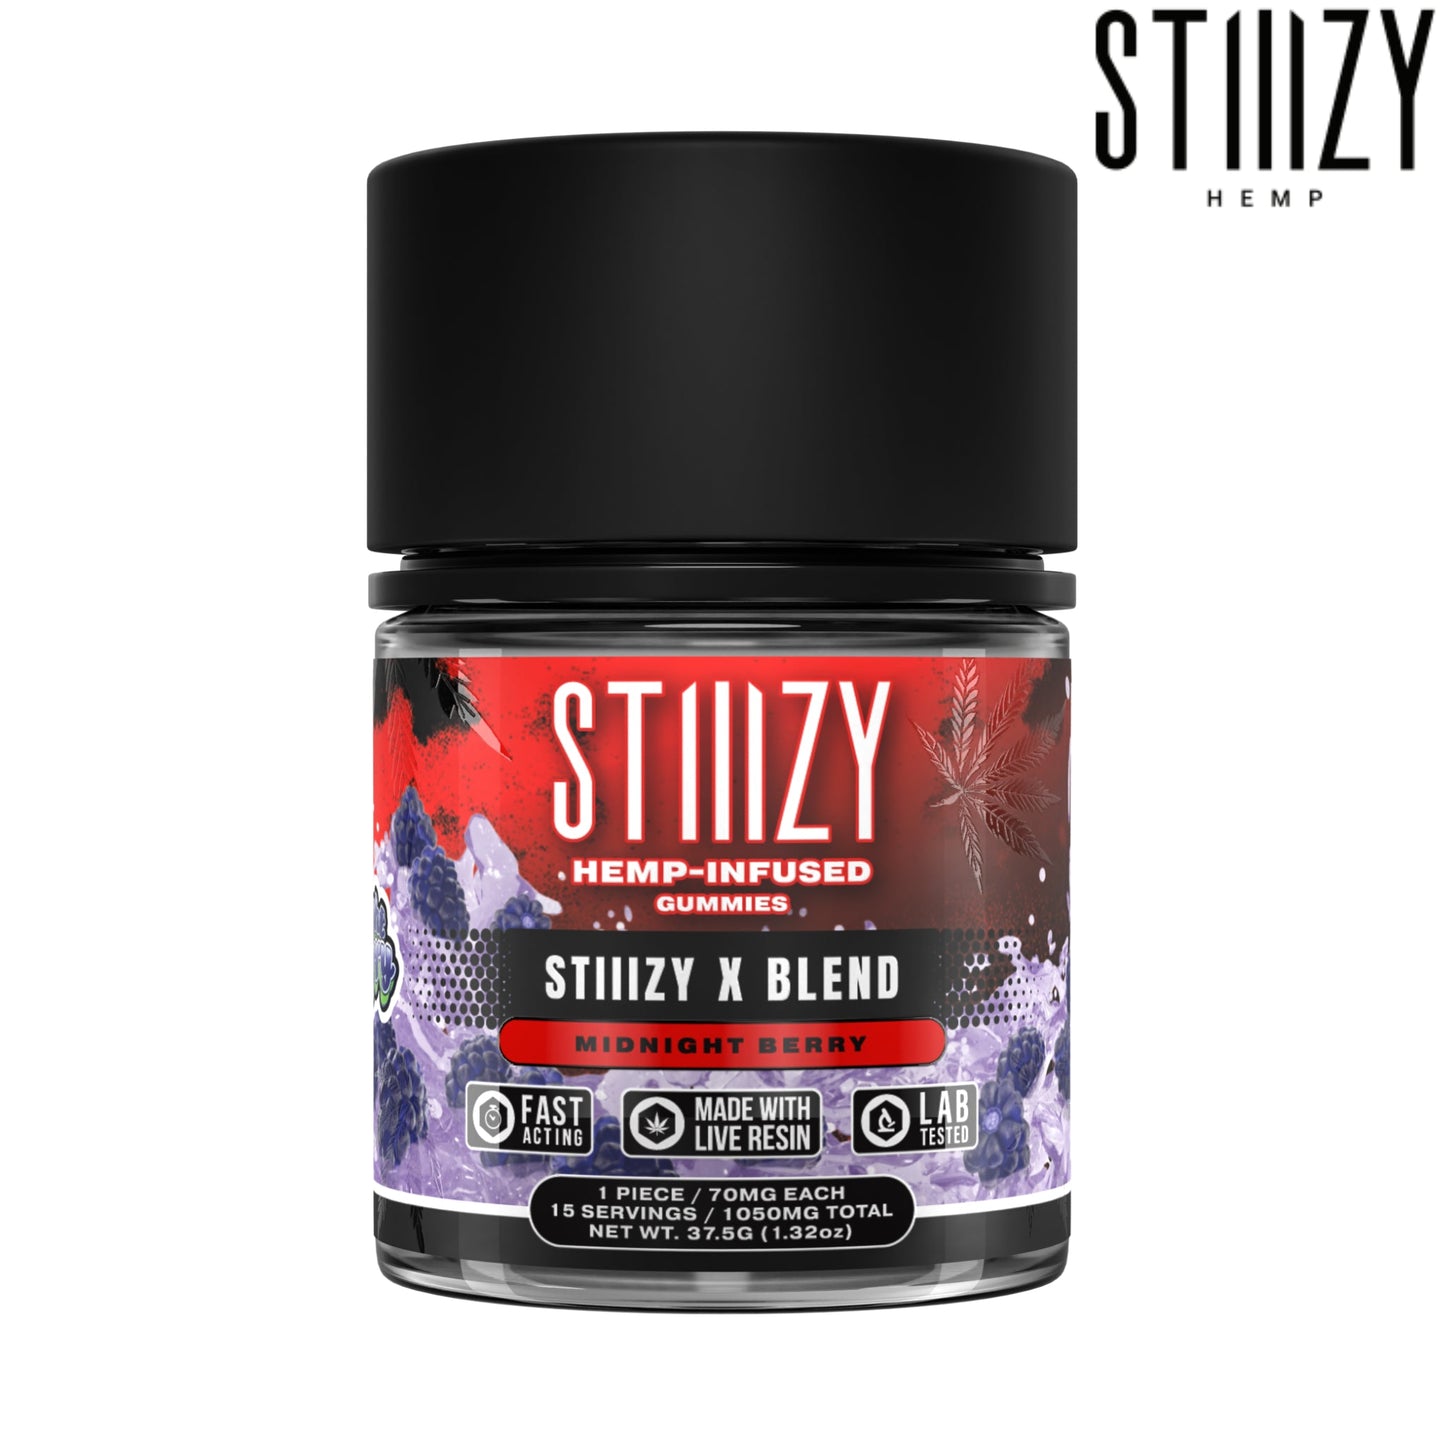 Stiiizy X Blend Gummies - 1050mg Midnight Berry